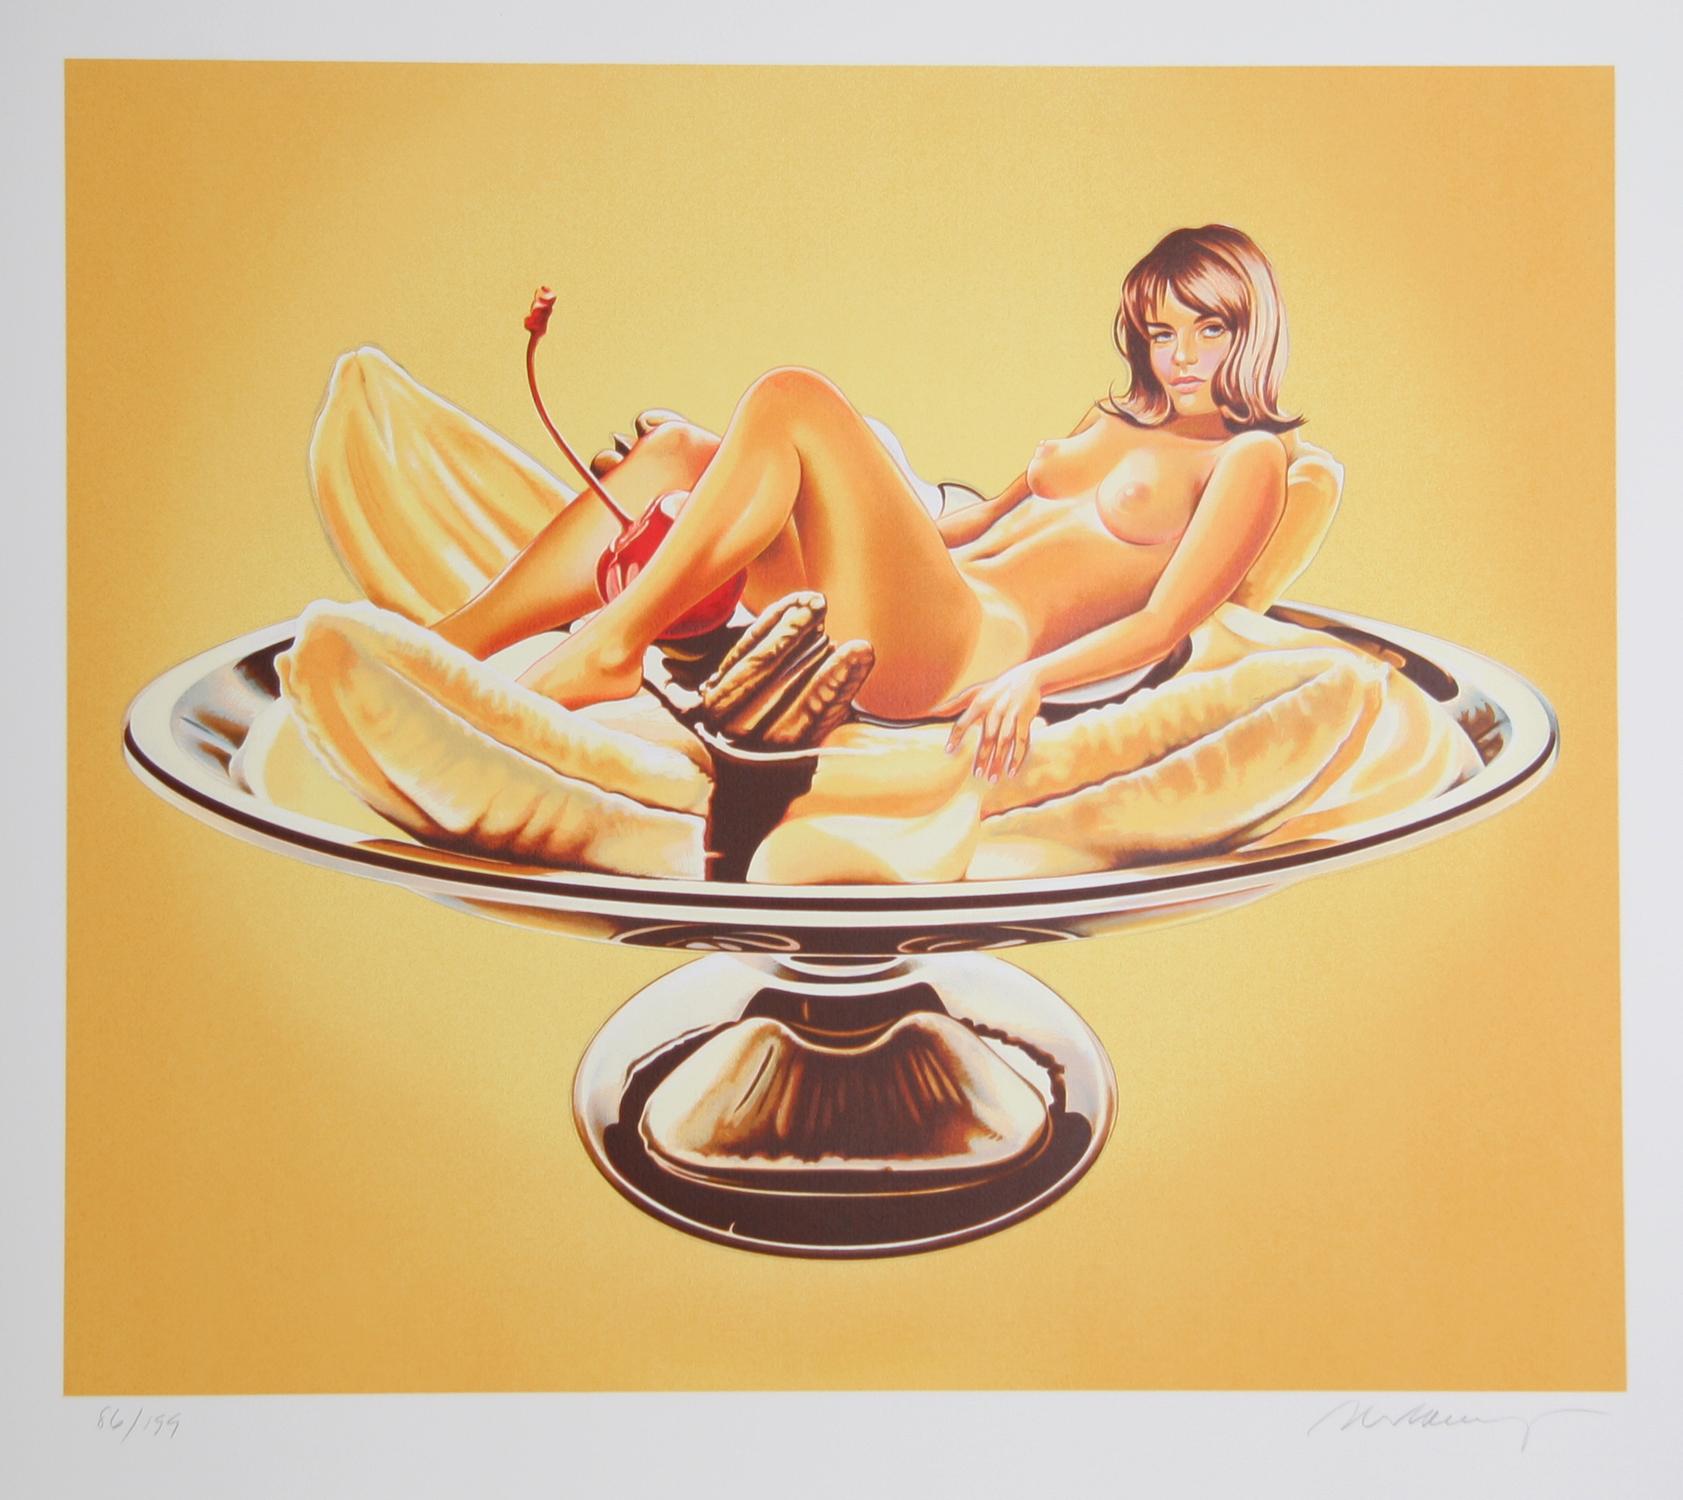 Artiste : Mel Ramos, américain (1935 - 2018)
Titre : Banana Split (Sally Duberson)
Année : 2000
Médium : Lithographie, signée et numérotée au crayon 
Edition : 199
Taille du papier : 36 x 40 pouces 